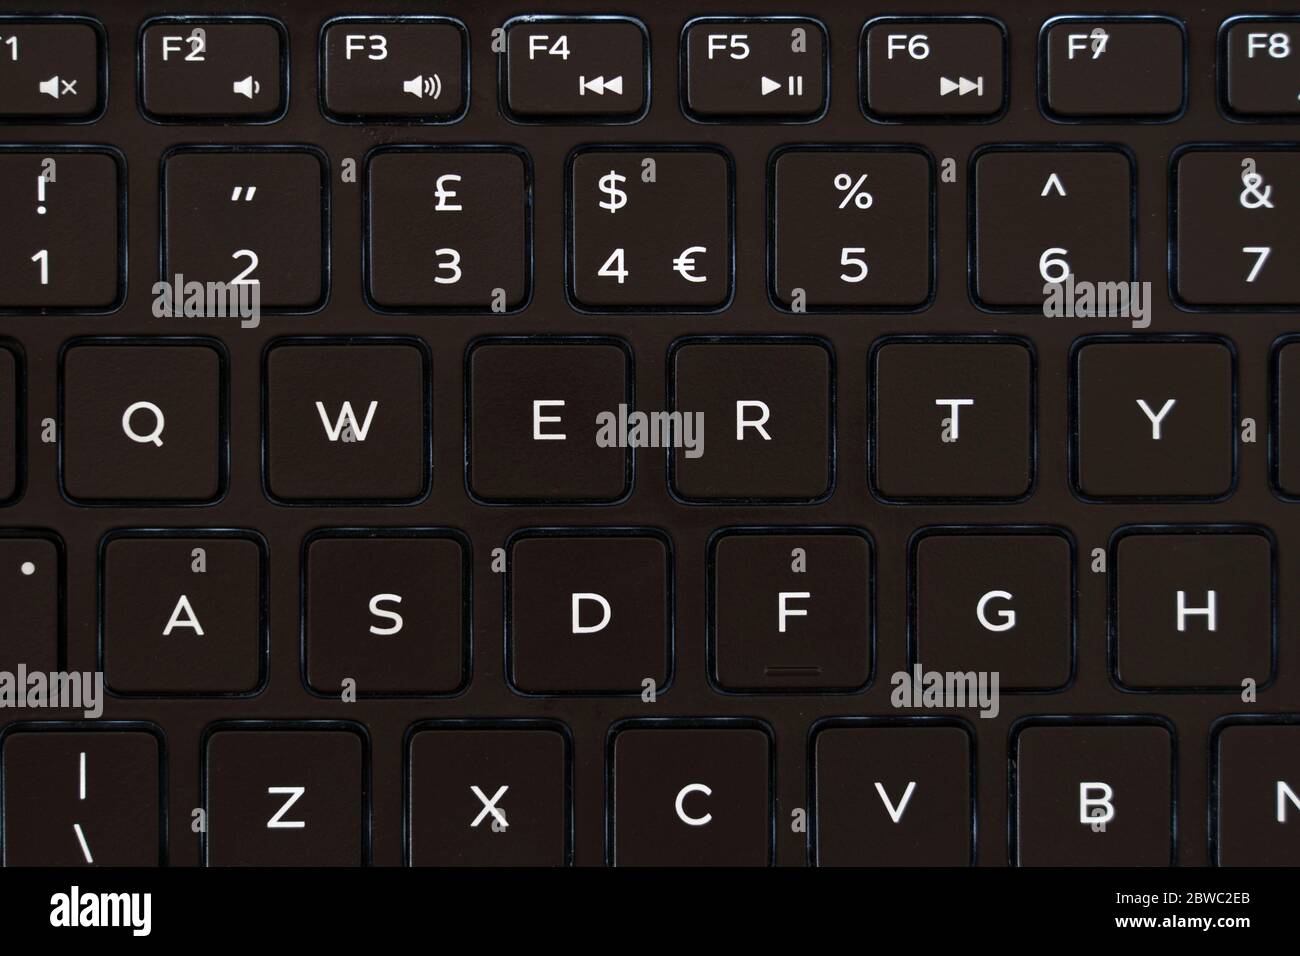 Un clavier qwerty anglais pour ordinateur portable. Concept - mot de passe et cybersécurité. qwerty est l'un des mots de passe les plus insécurisés et les plus courants Banque D'Images